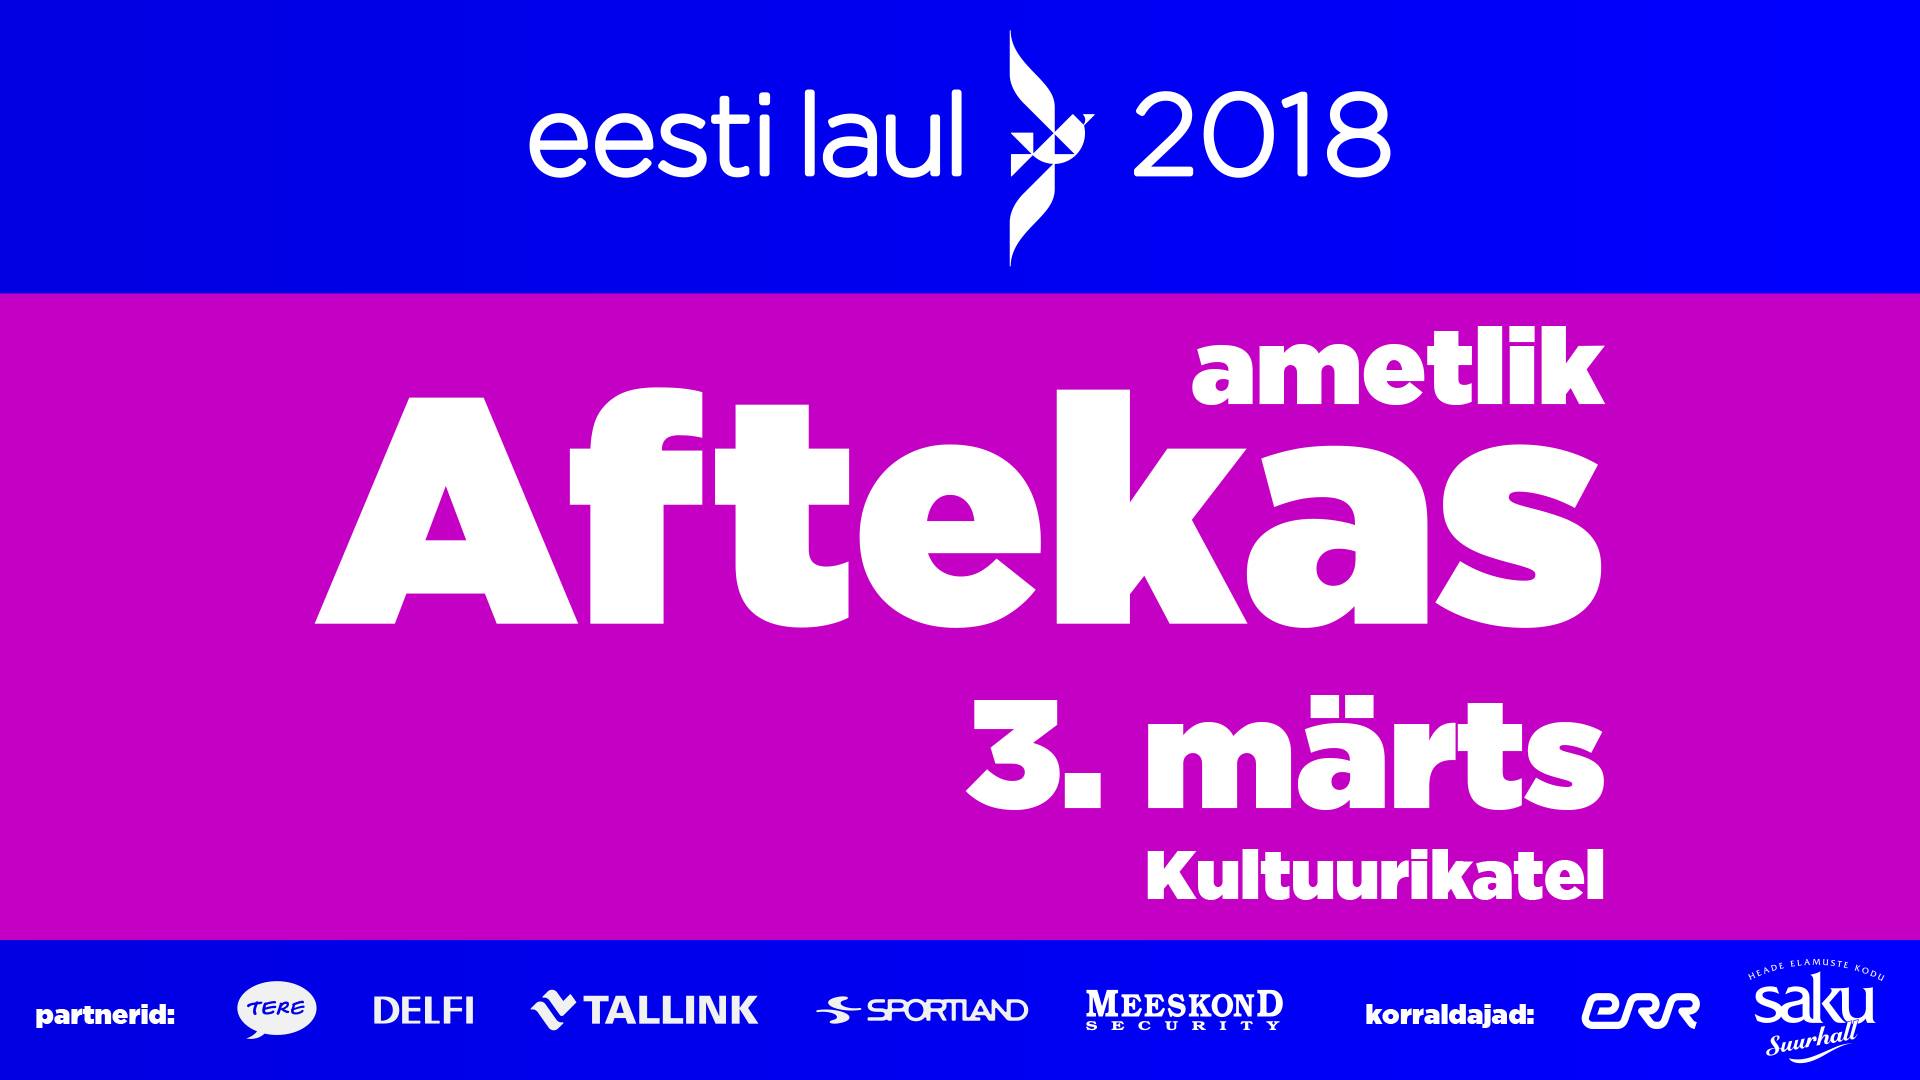 6494„Eesti laul 2018“ ametlik AFTEKAS